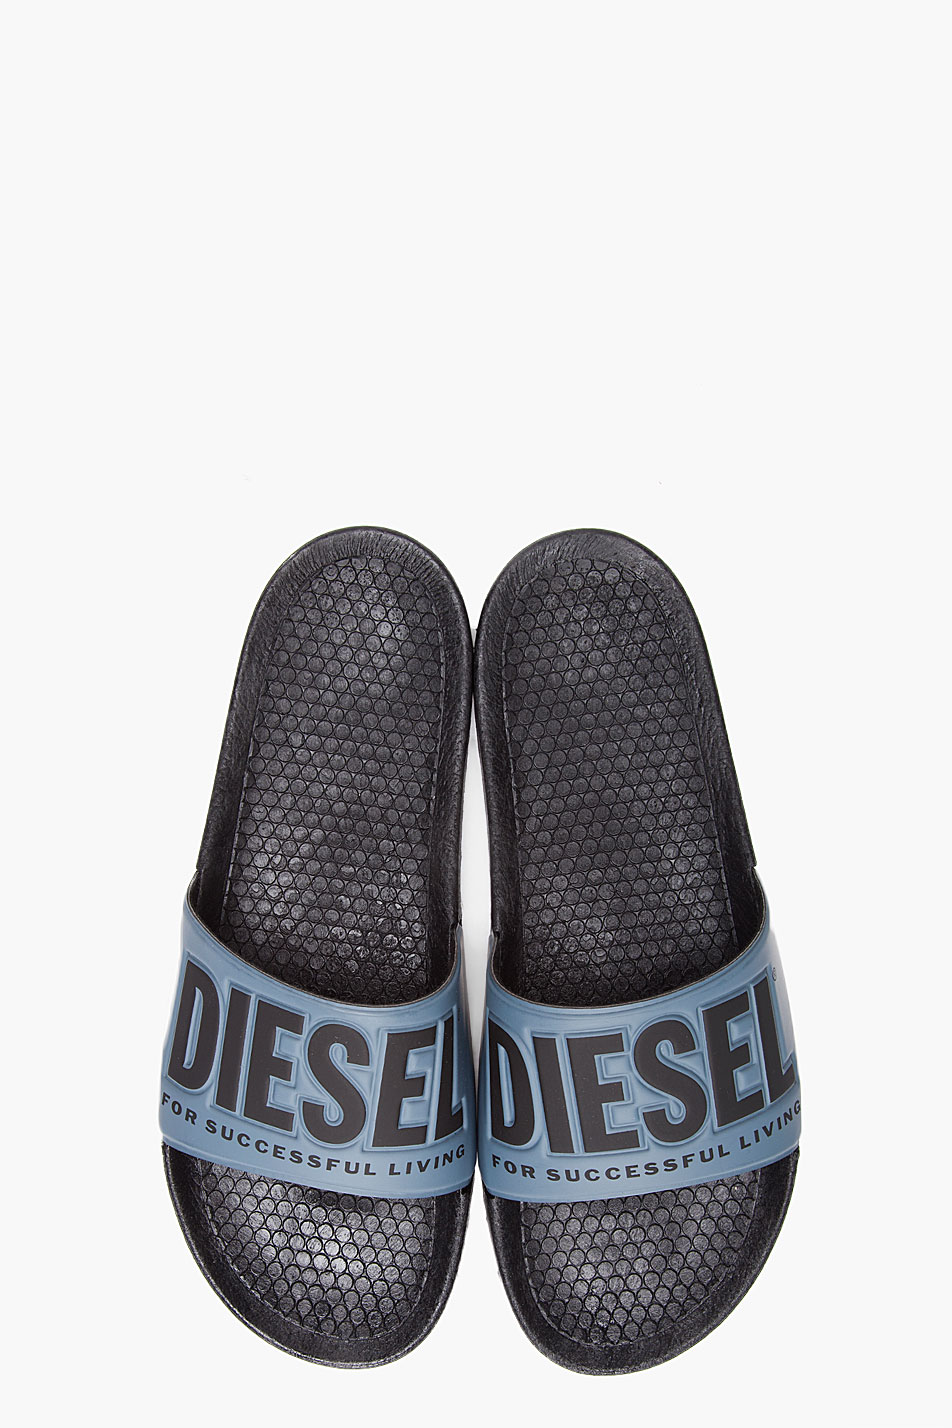 Diesel Sandals For Men 86